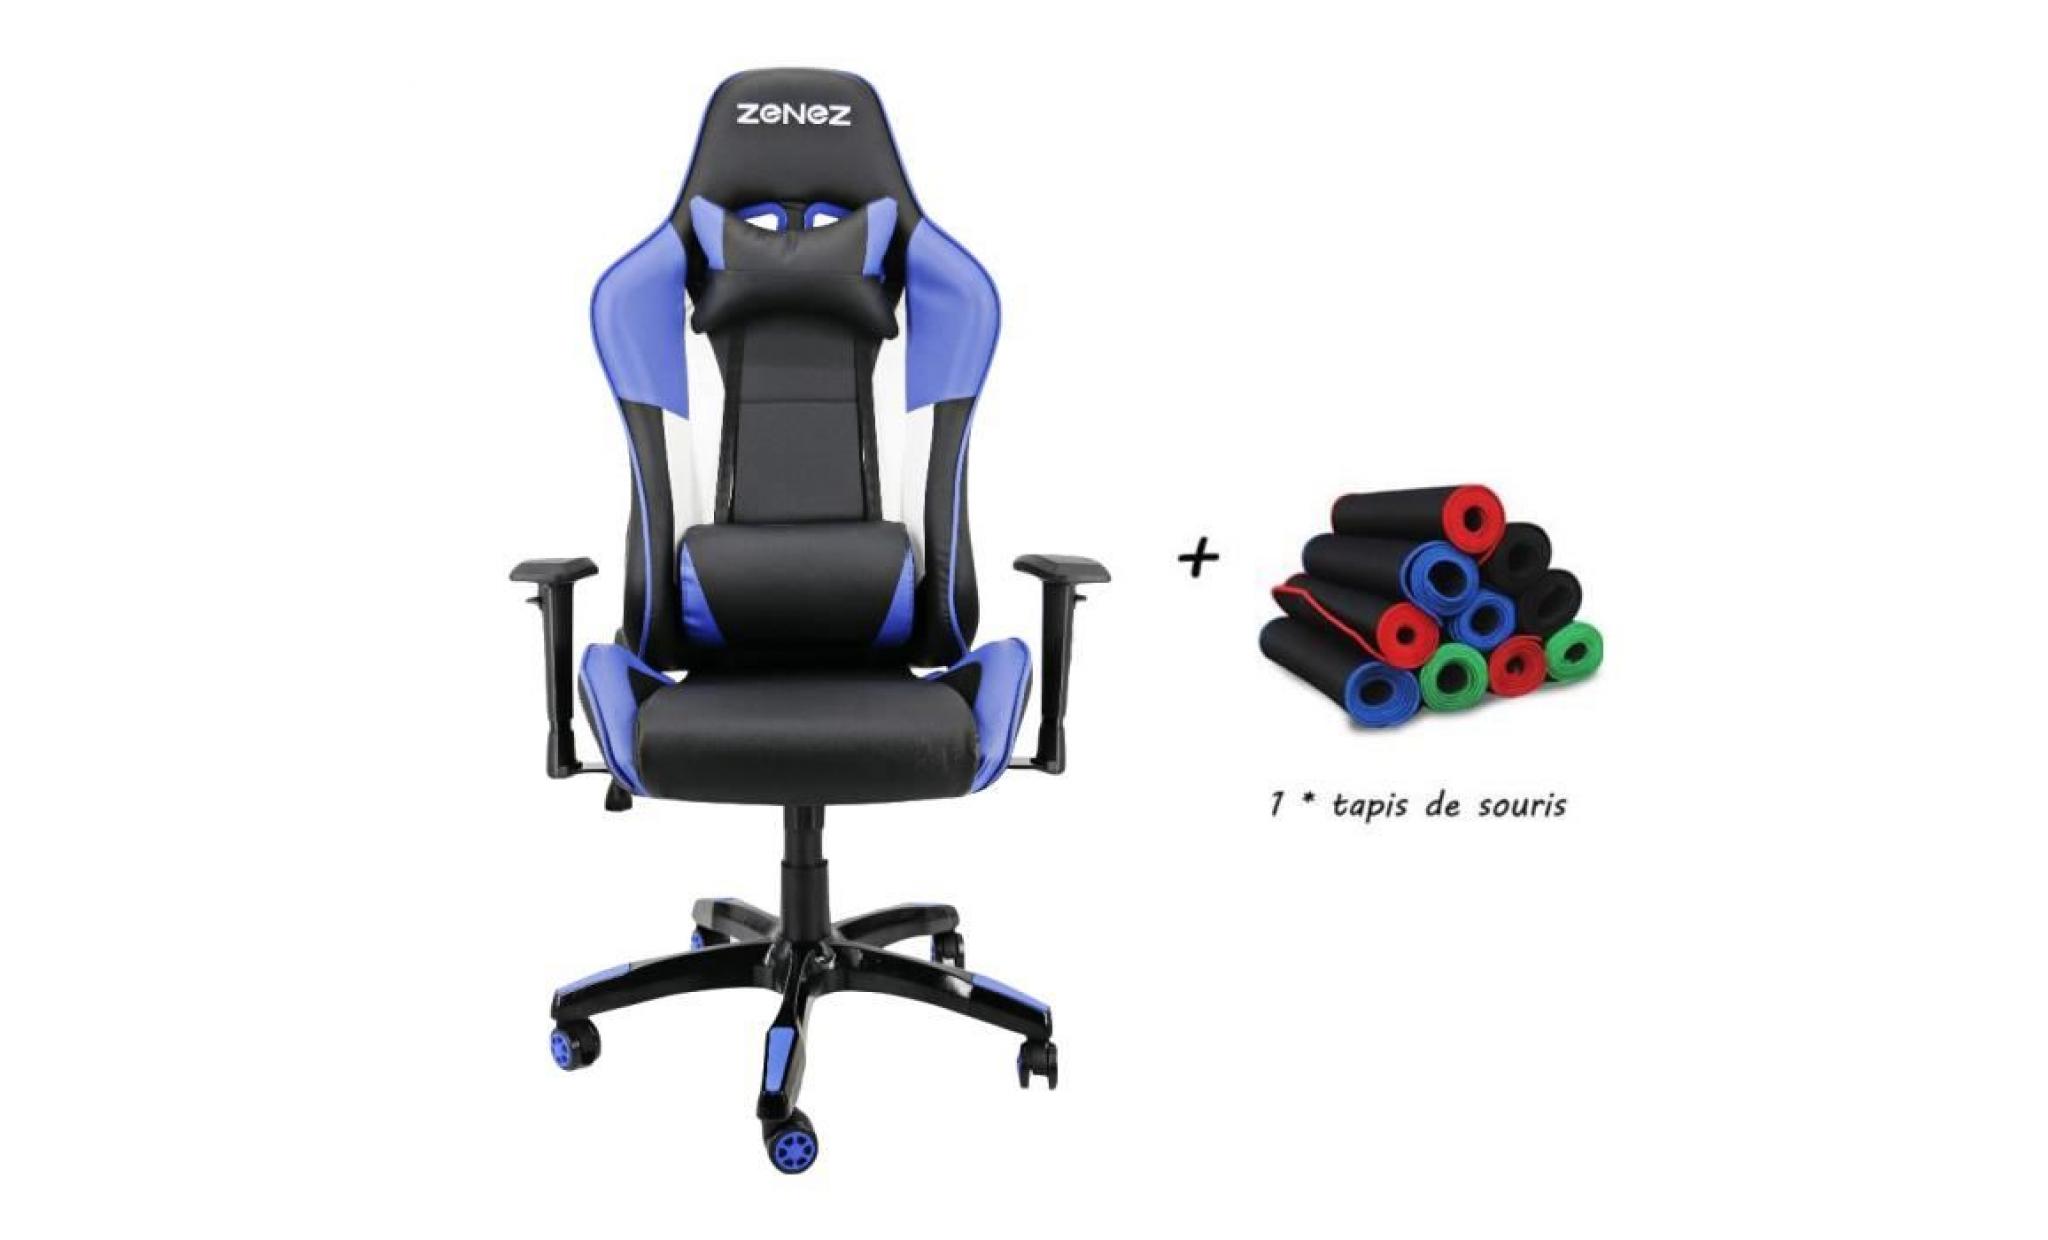 fauteuil bascule fauteuil chaise à bascule fauteuil à bascule chaise pivotante chaise gaming fauteuil inclinable chaise bleu